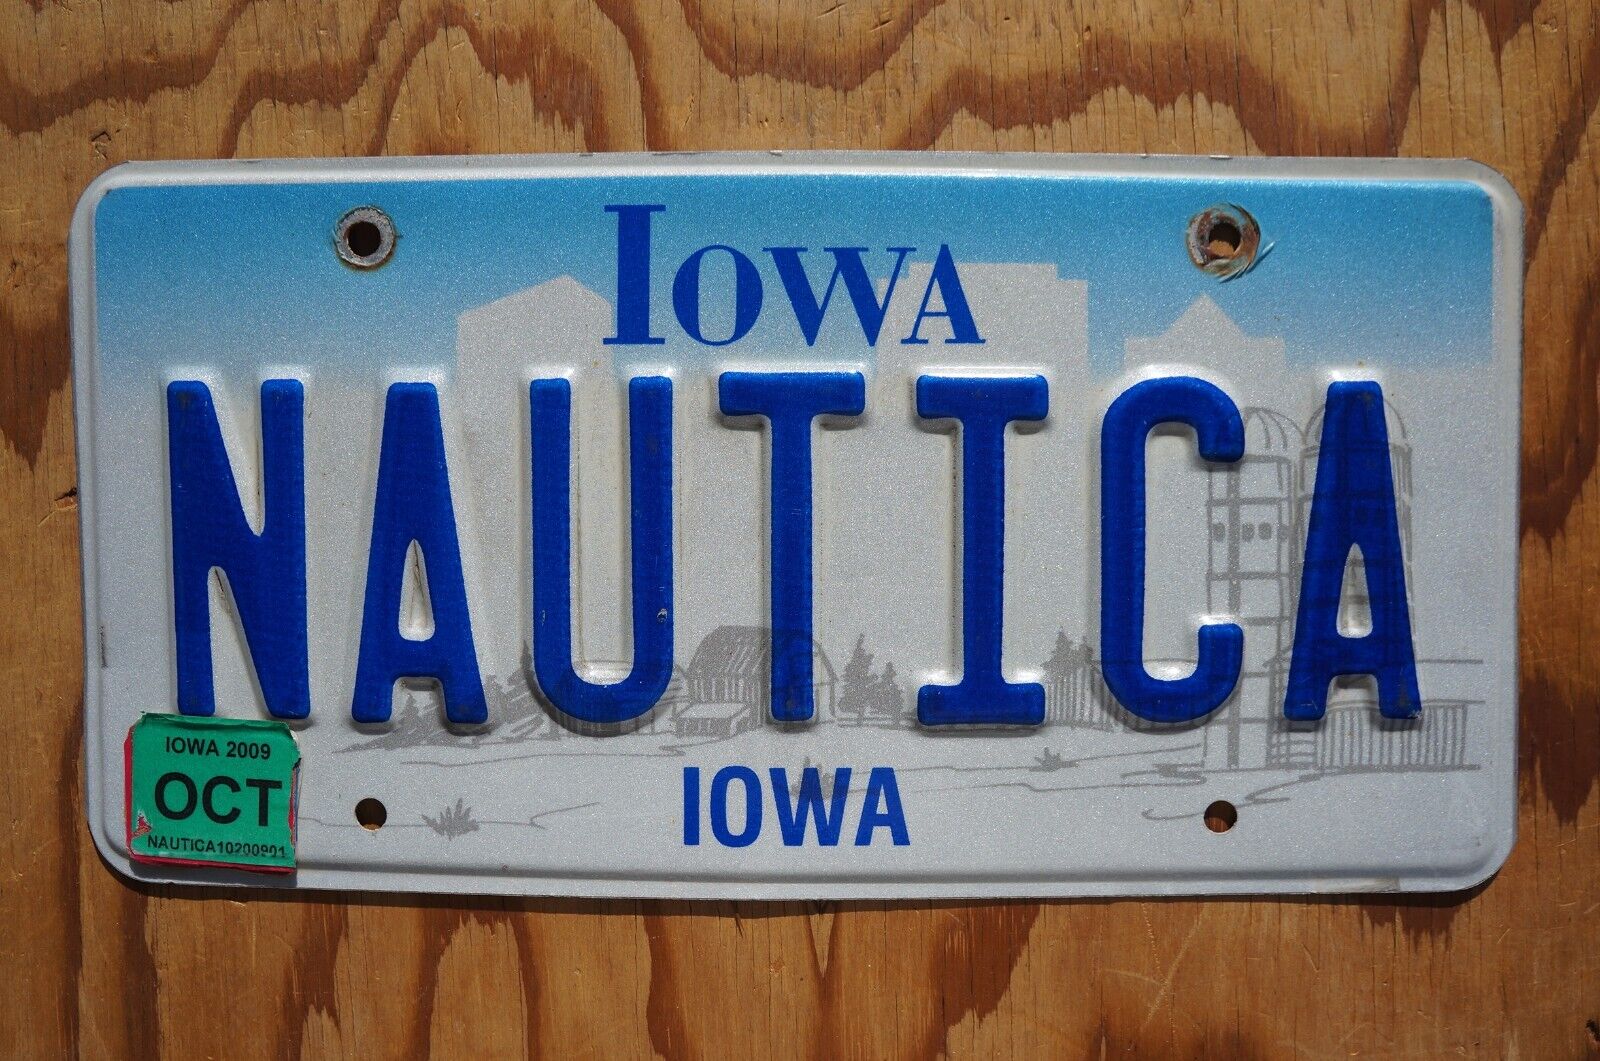 2009 Iowa Nautica Vanity License Plate - NAUTICA